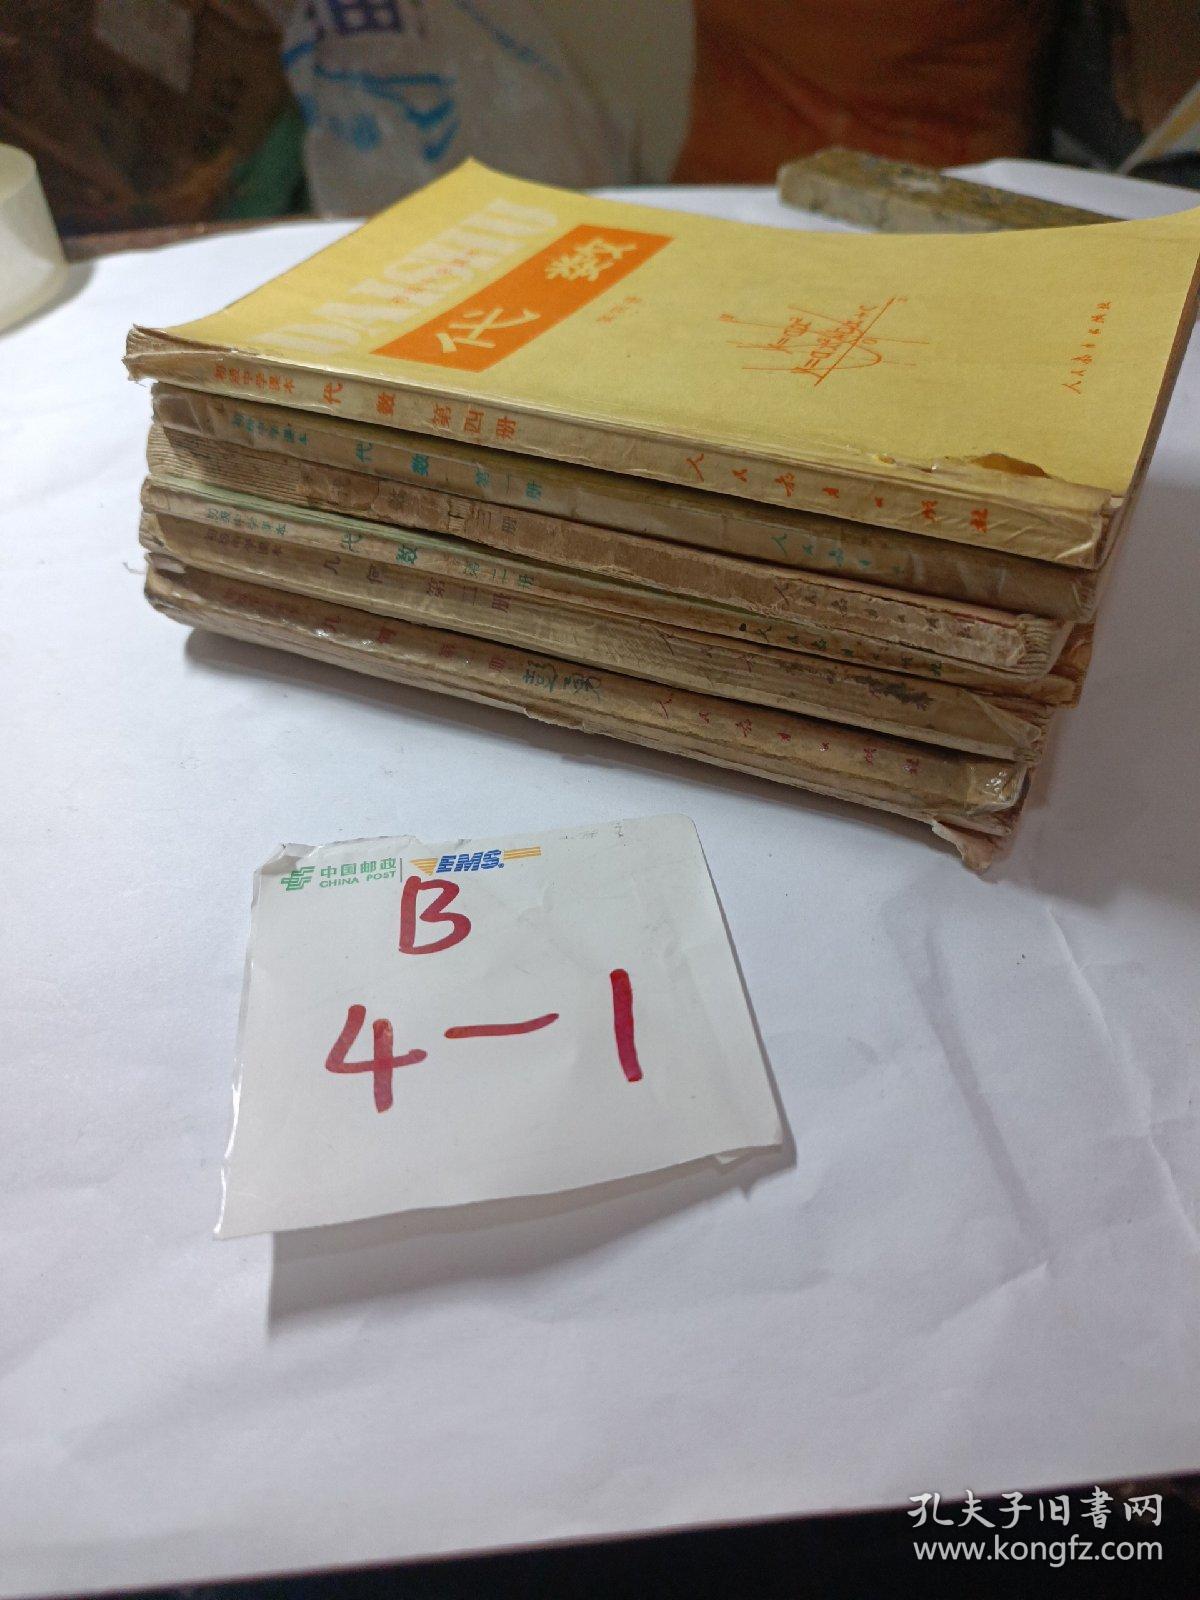 老课本 老版初中数学课本 初级中学课本 数学【 代数4本 几何二册 人教版 82年~93年版 有笔记】品见图，共6本。